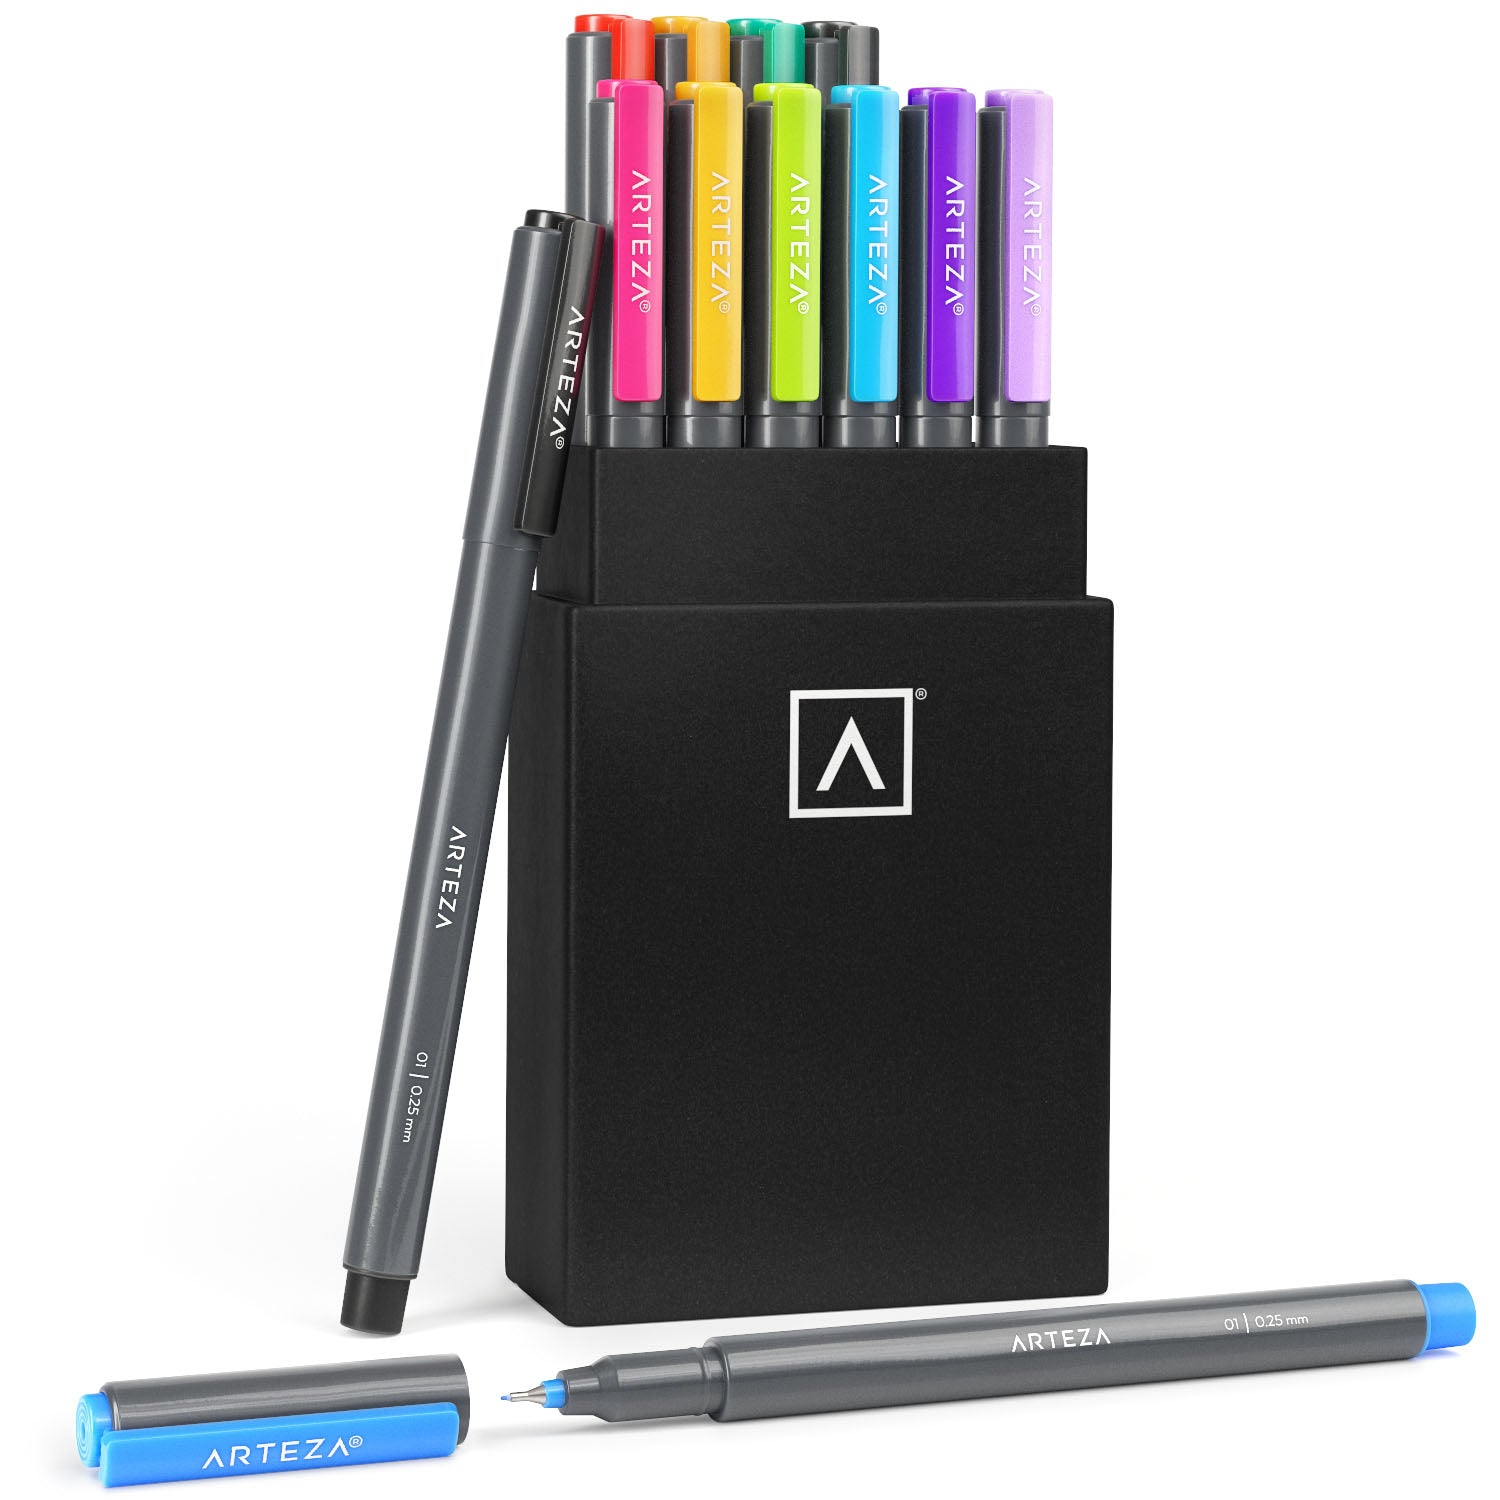 Fineliner Pens, Pack of 12 Art Pens, Fine Line Pen Colored Sketch